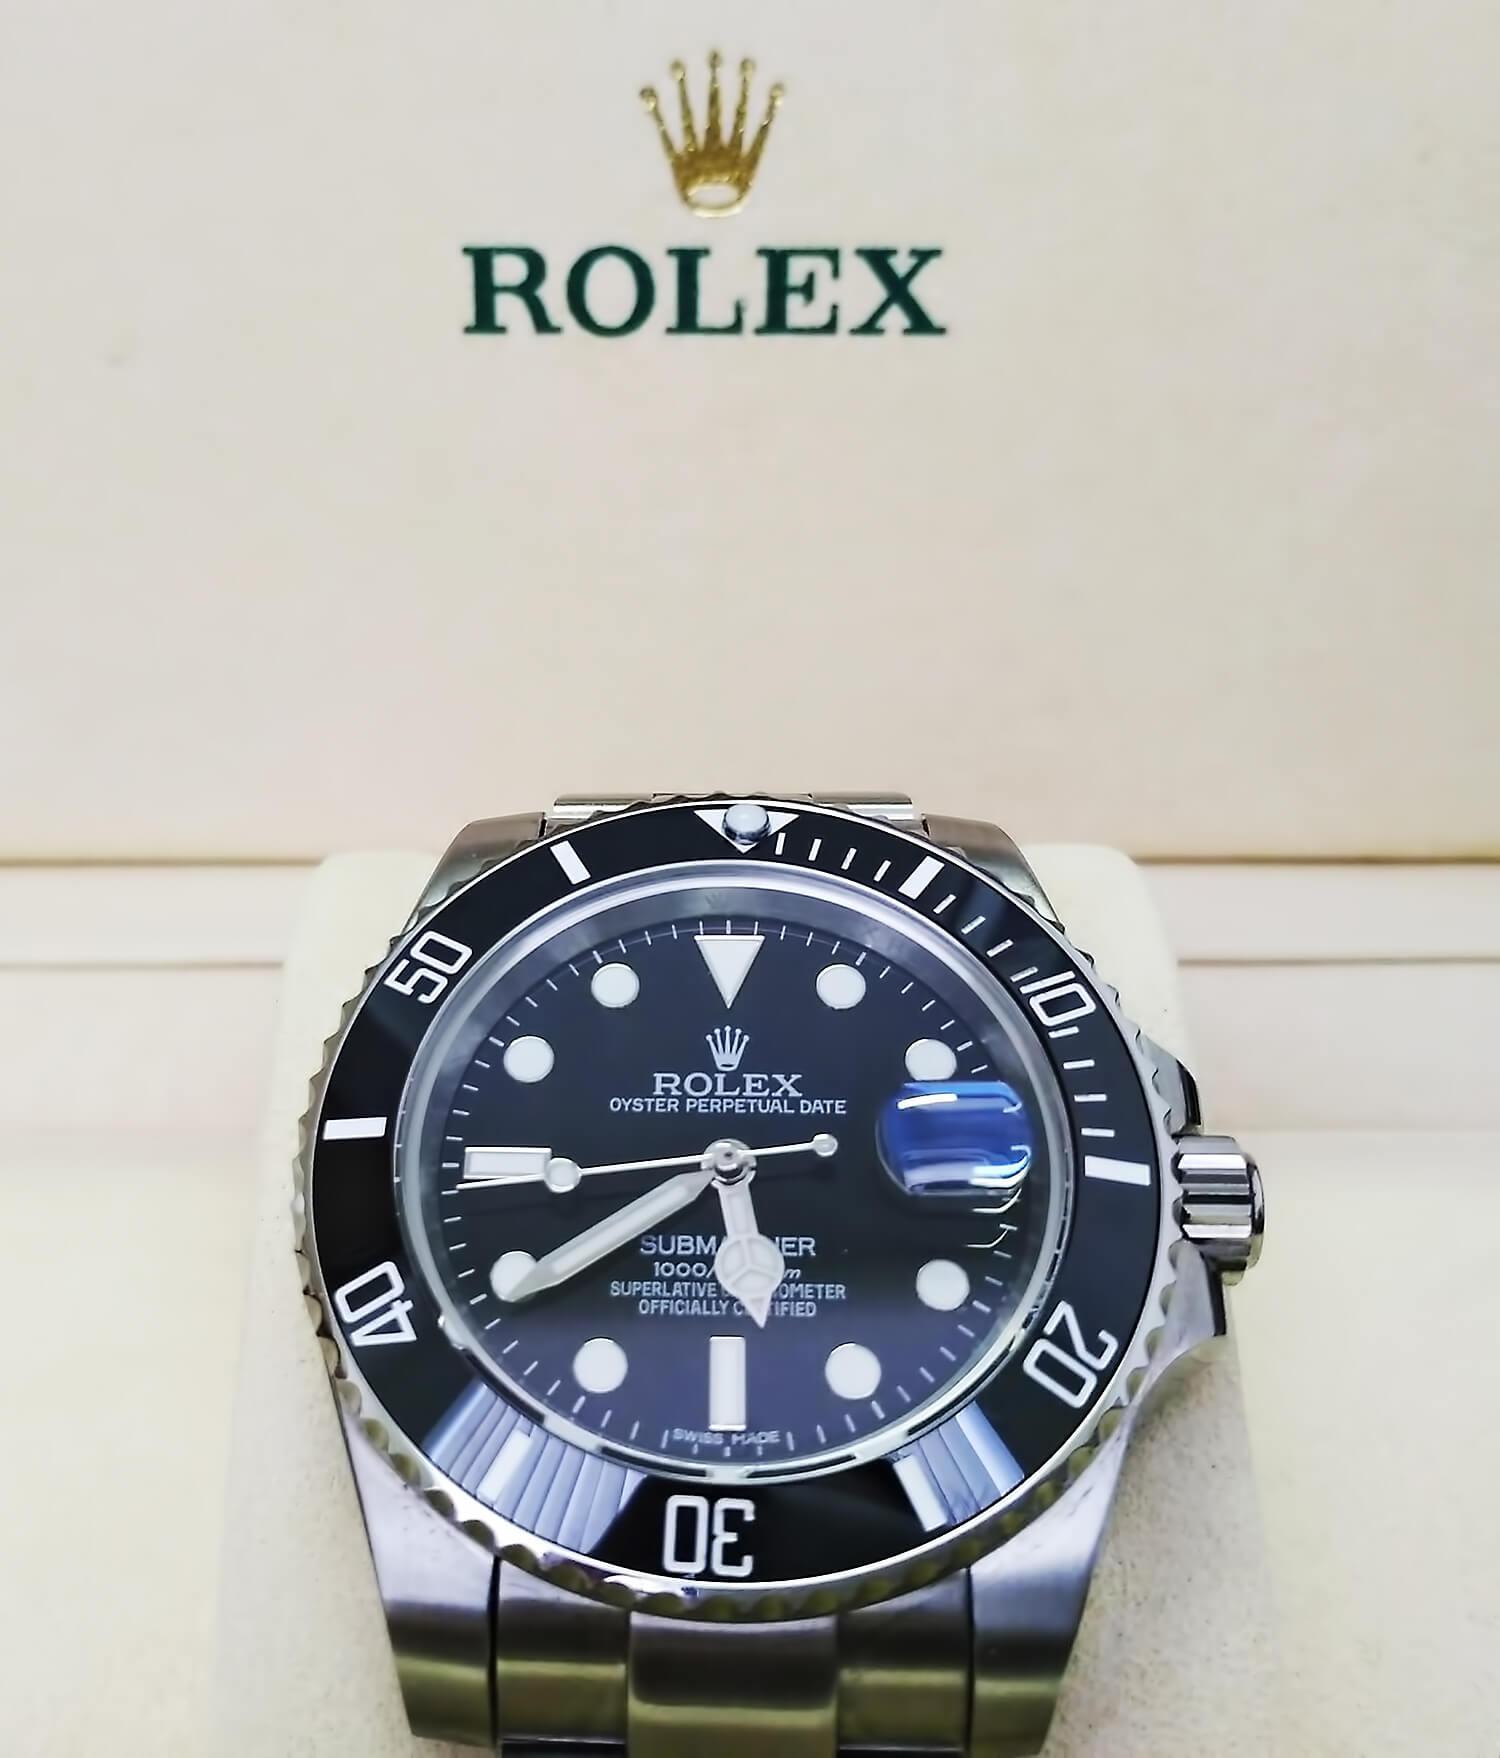 Rolex Submariner Date отличается от Rolex Submariner наличием окошком даты под циклопической линзой